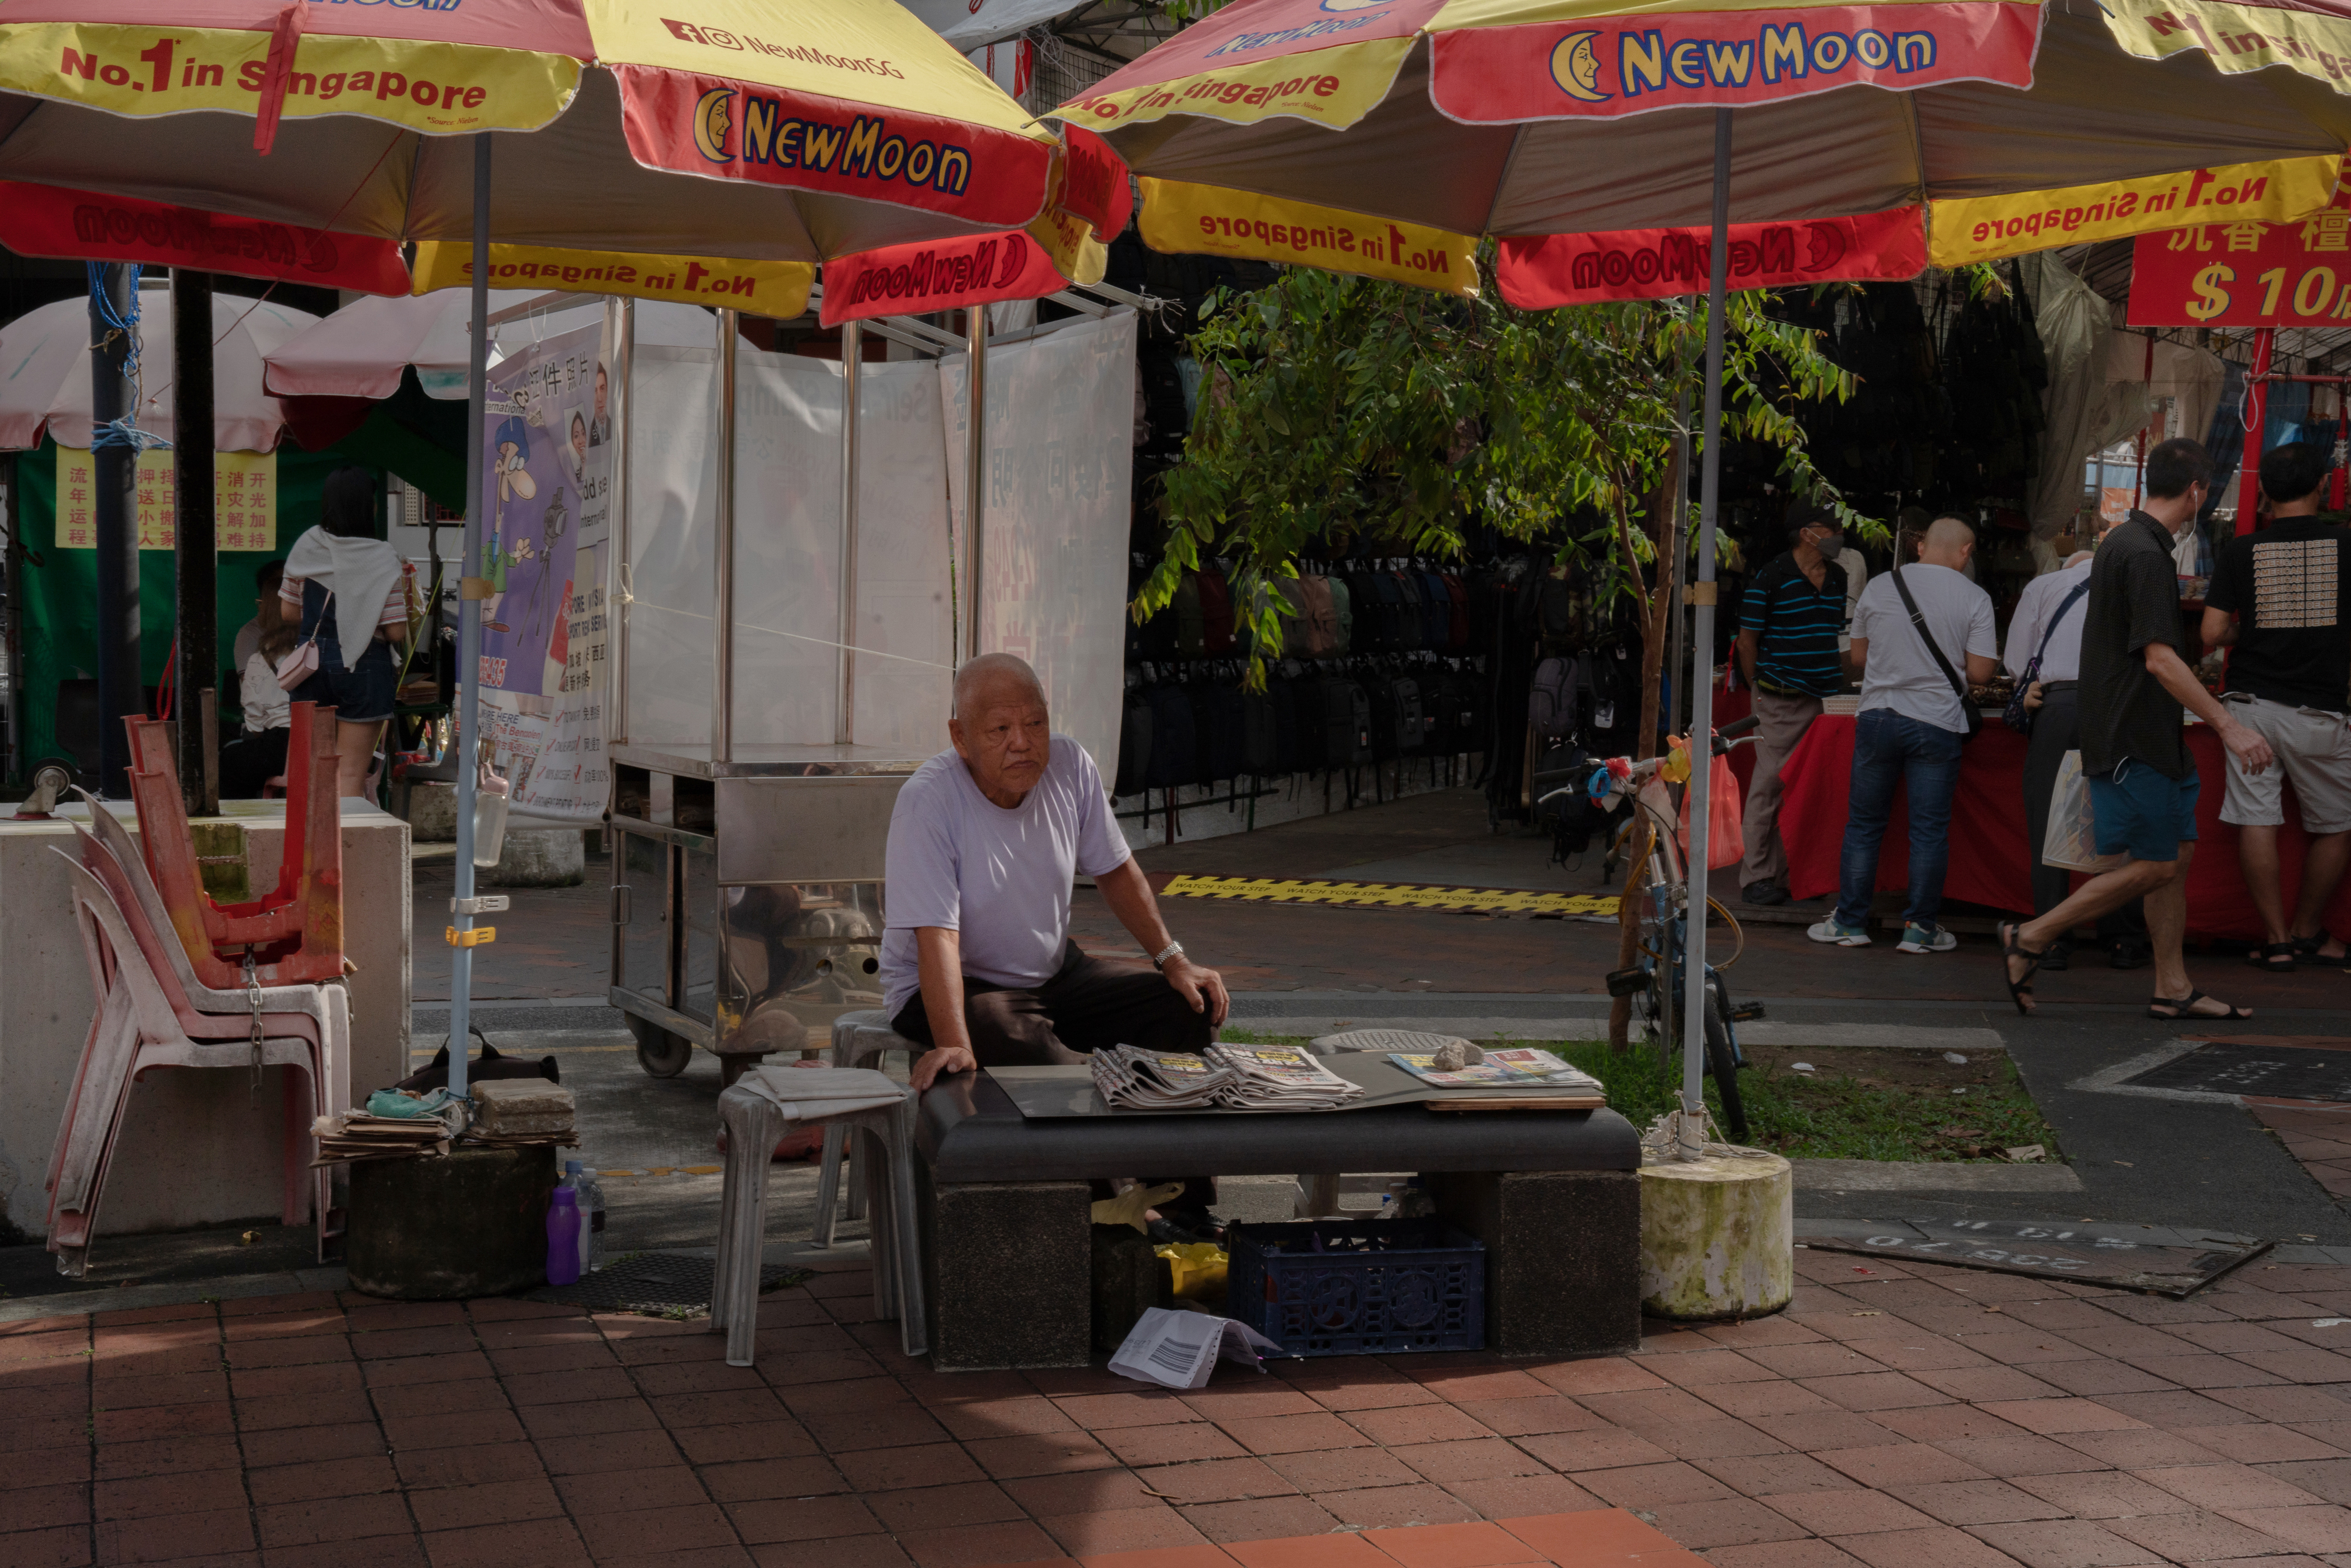 워털루 거리에서 한 남자가 중국어 신문 롄허짜오바오를 비롯한 신문을 팔고 있다. /사진=Amrita Chandradas (Washington Post)